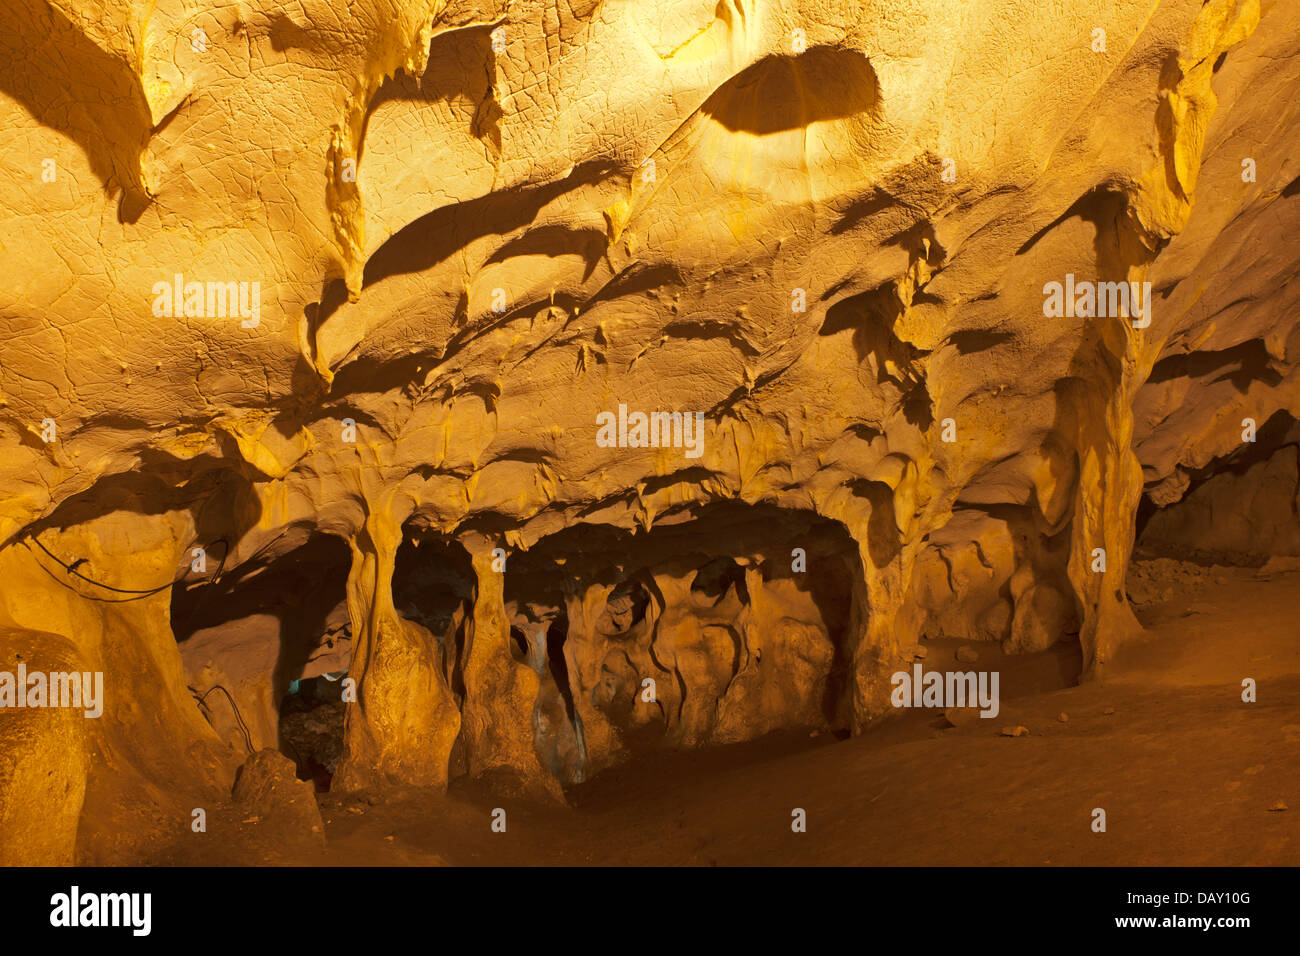 Türkei, Provinz Antalya, Dösemealti, Dorf Yagca, Karain Höhle Foto Stock